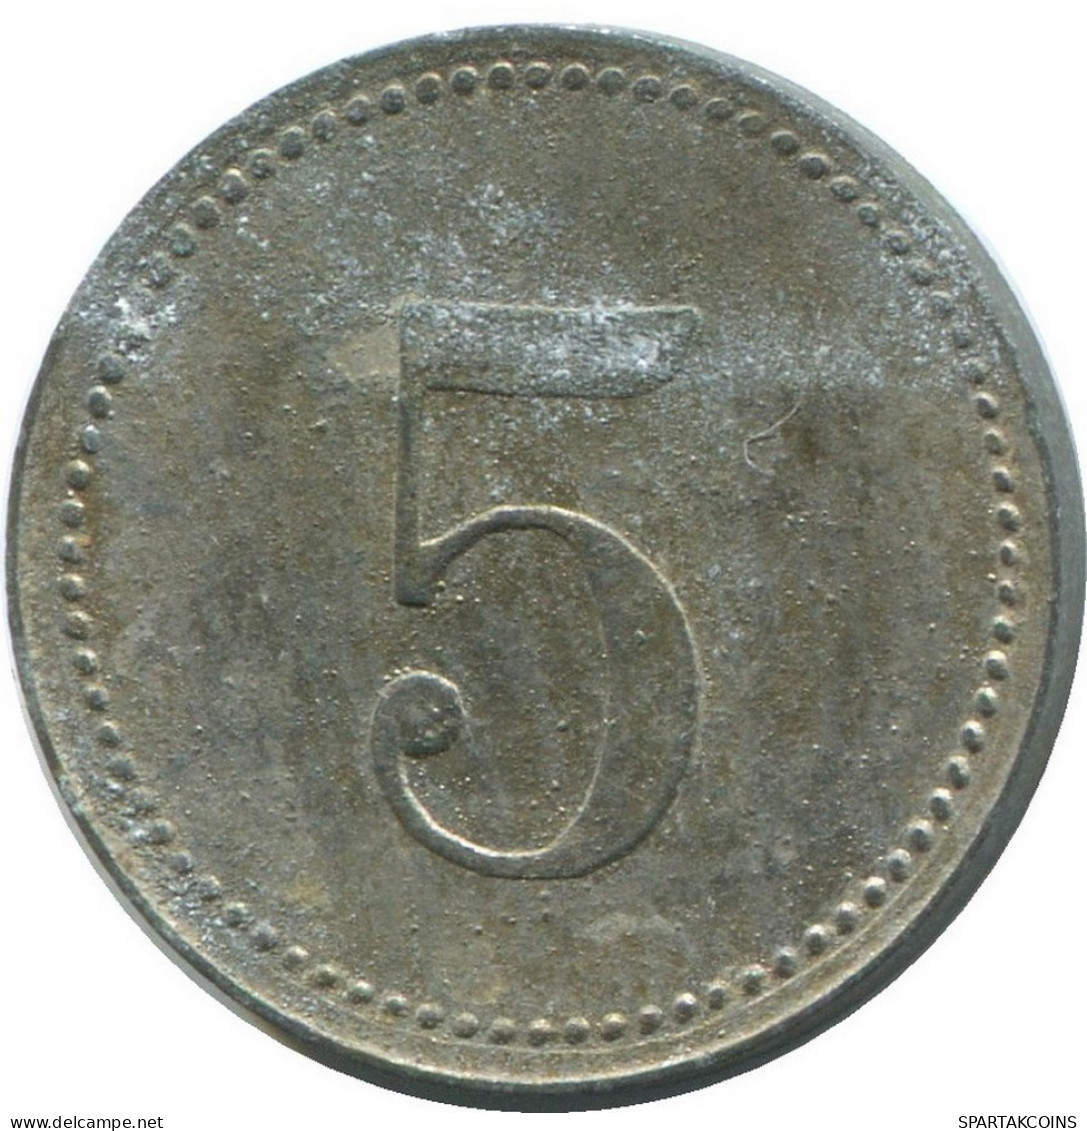 BAVARIA 5 PFENNIG 1917 Notgeld German States #DE10489.6.F.A - 5 Pfennig